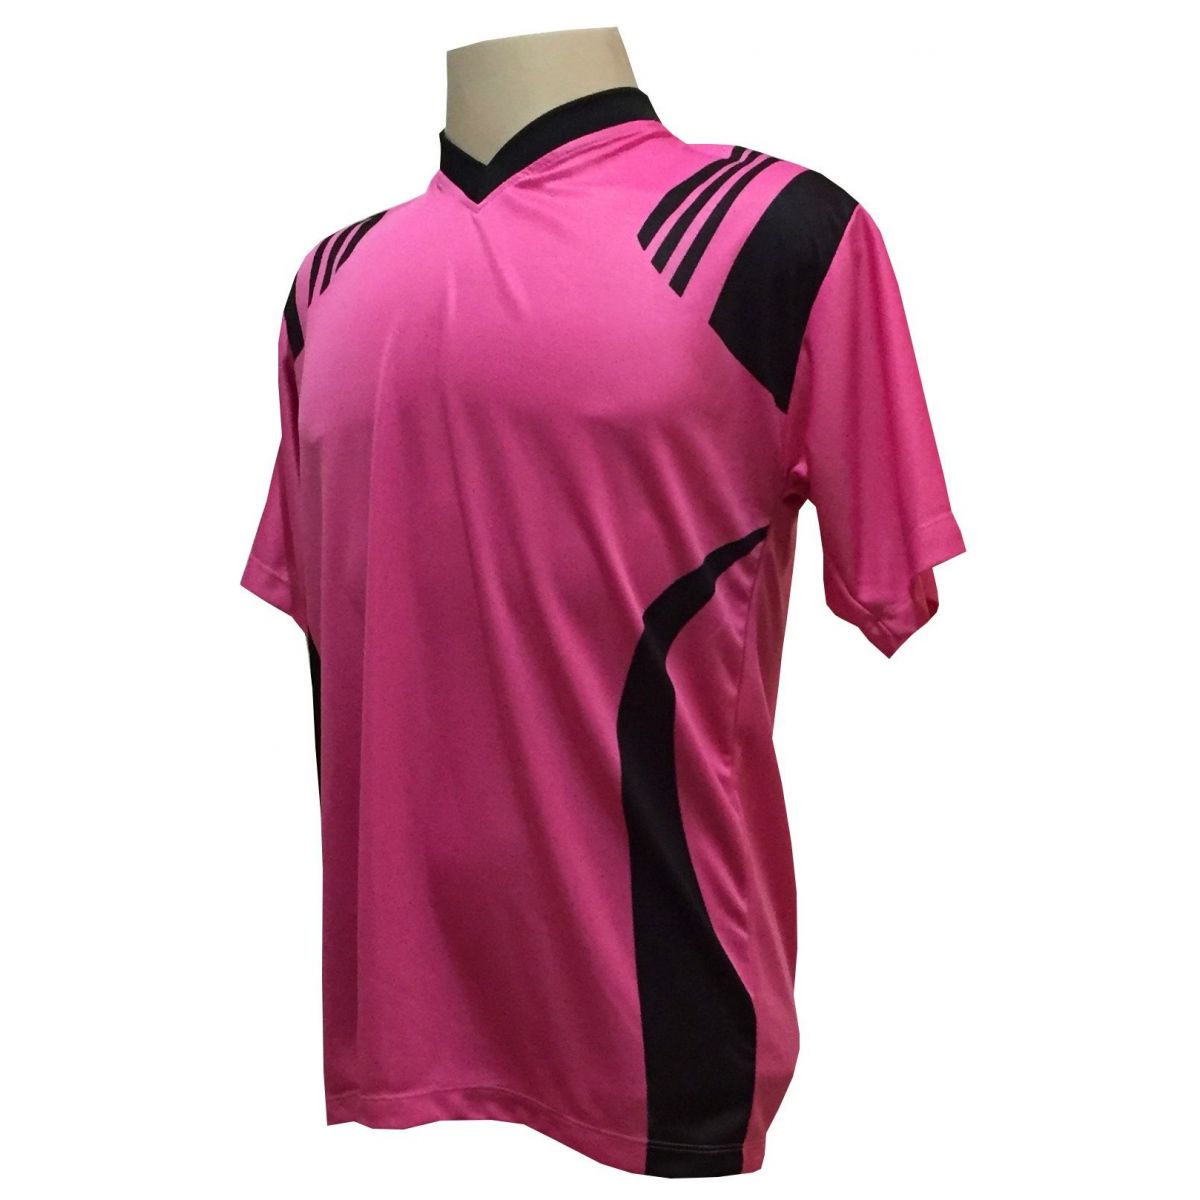 Fardamento Completo modelo Roma 18+1 (18 Camisas Pink/Preto + 18 Calções Madrid Preto + 18 Pares de Meiões Pretos + 1 Conjunto de Goleiro) + Brindes